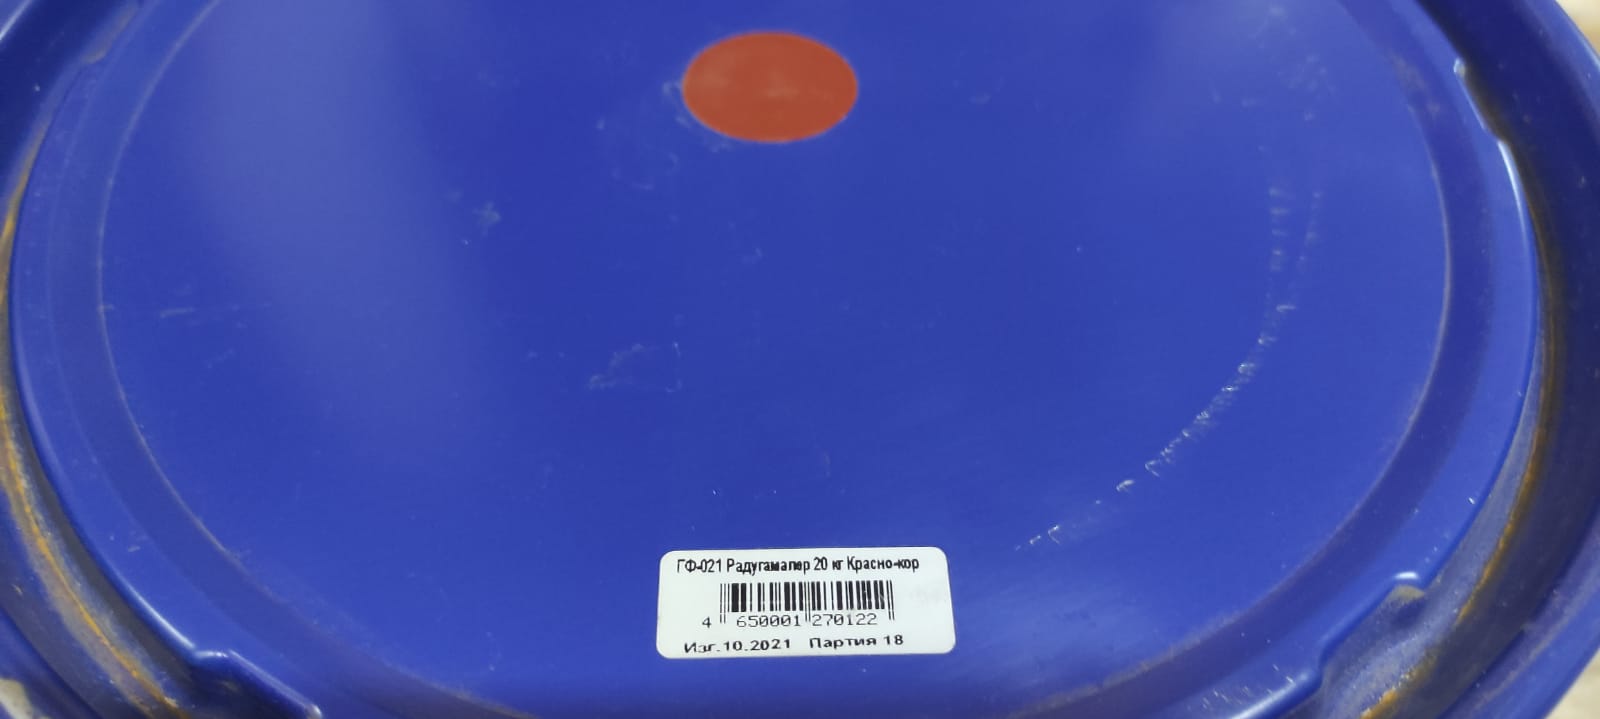 Грунт по металлу ГФ-021 РадугаМалер 20 кг (красно-коричневый)